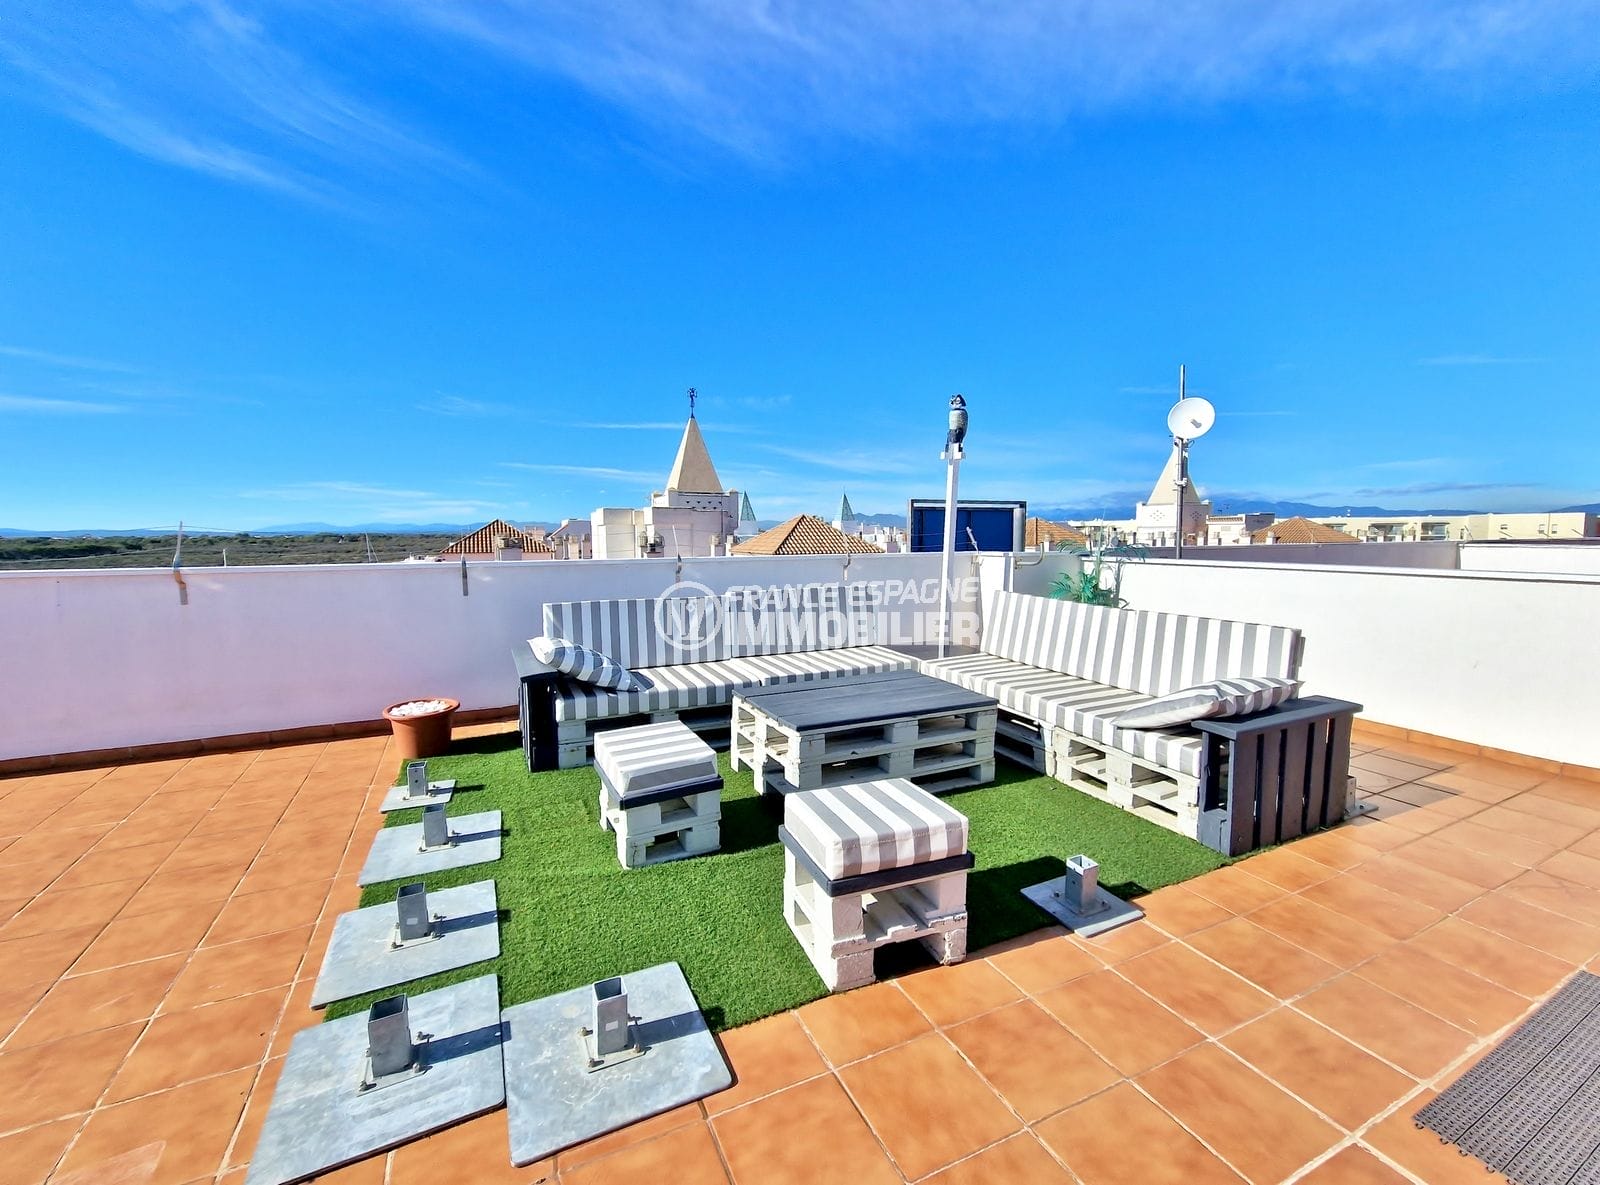 Roses - bel atico 3 bedrooms, terrace + solarium sea/marina view